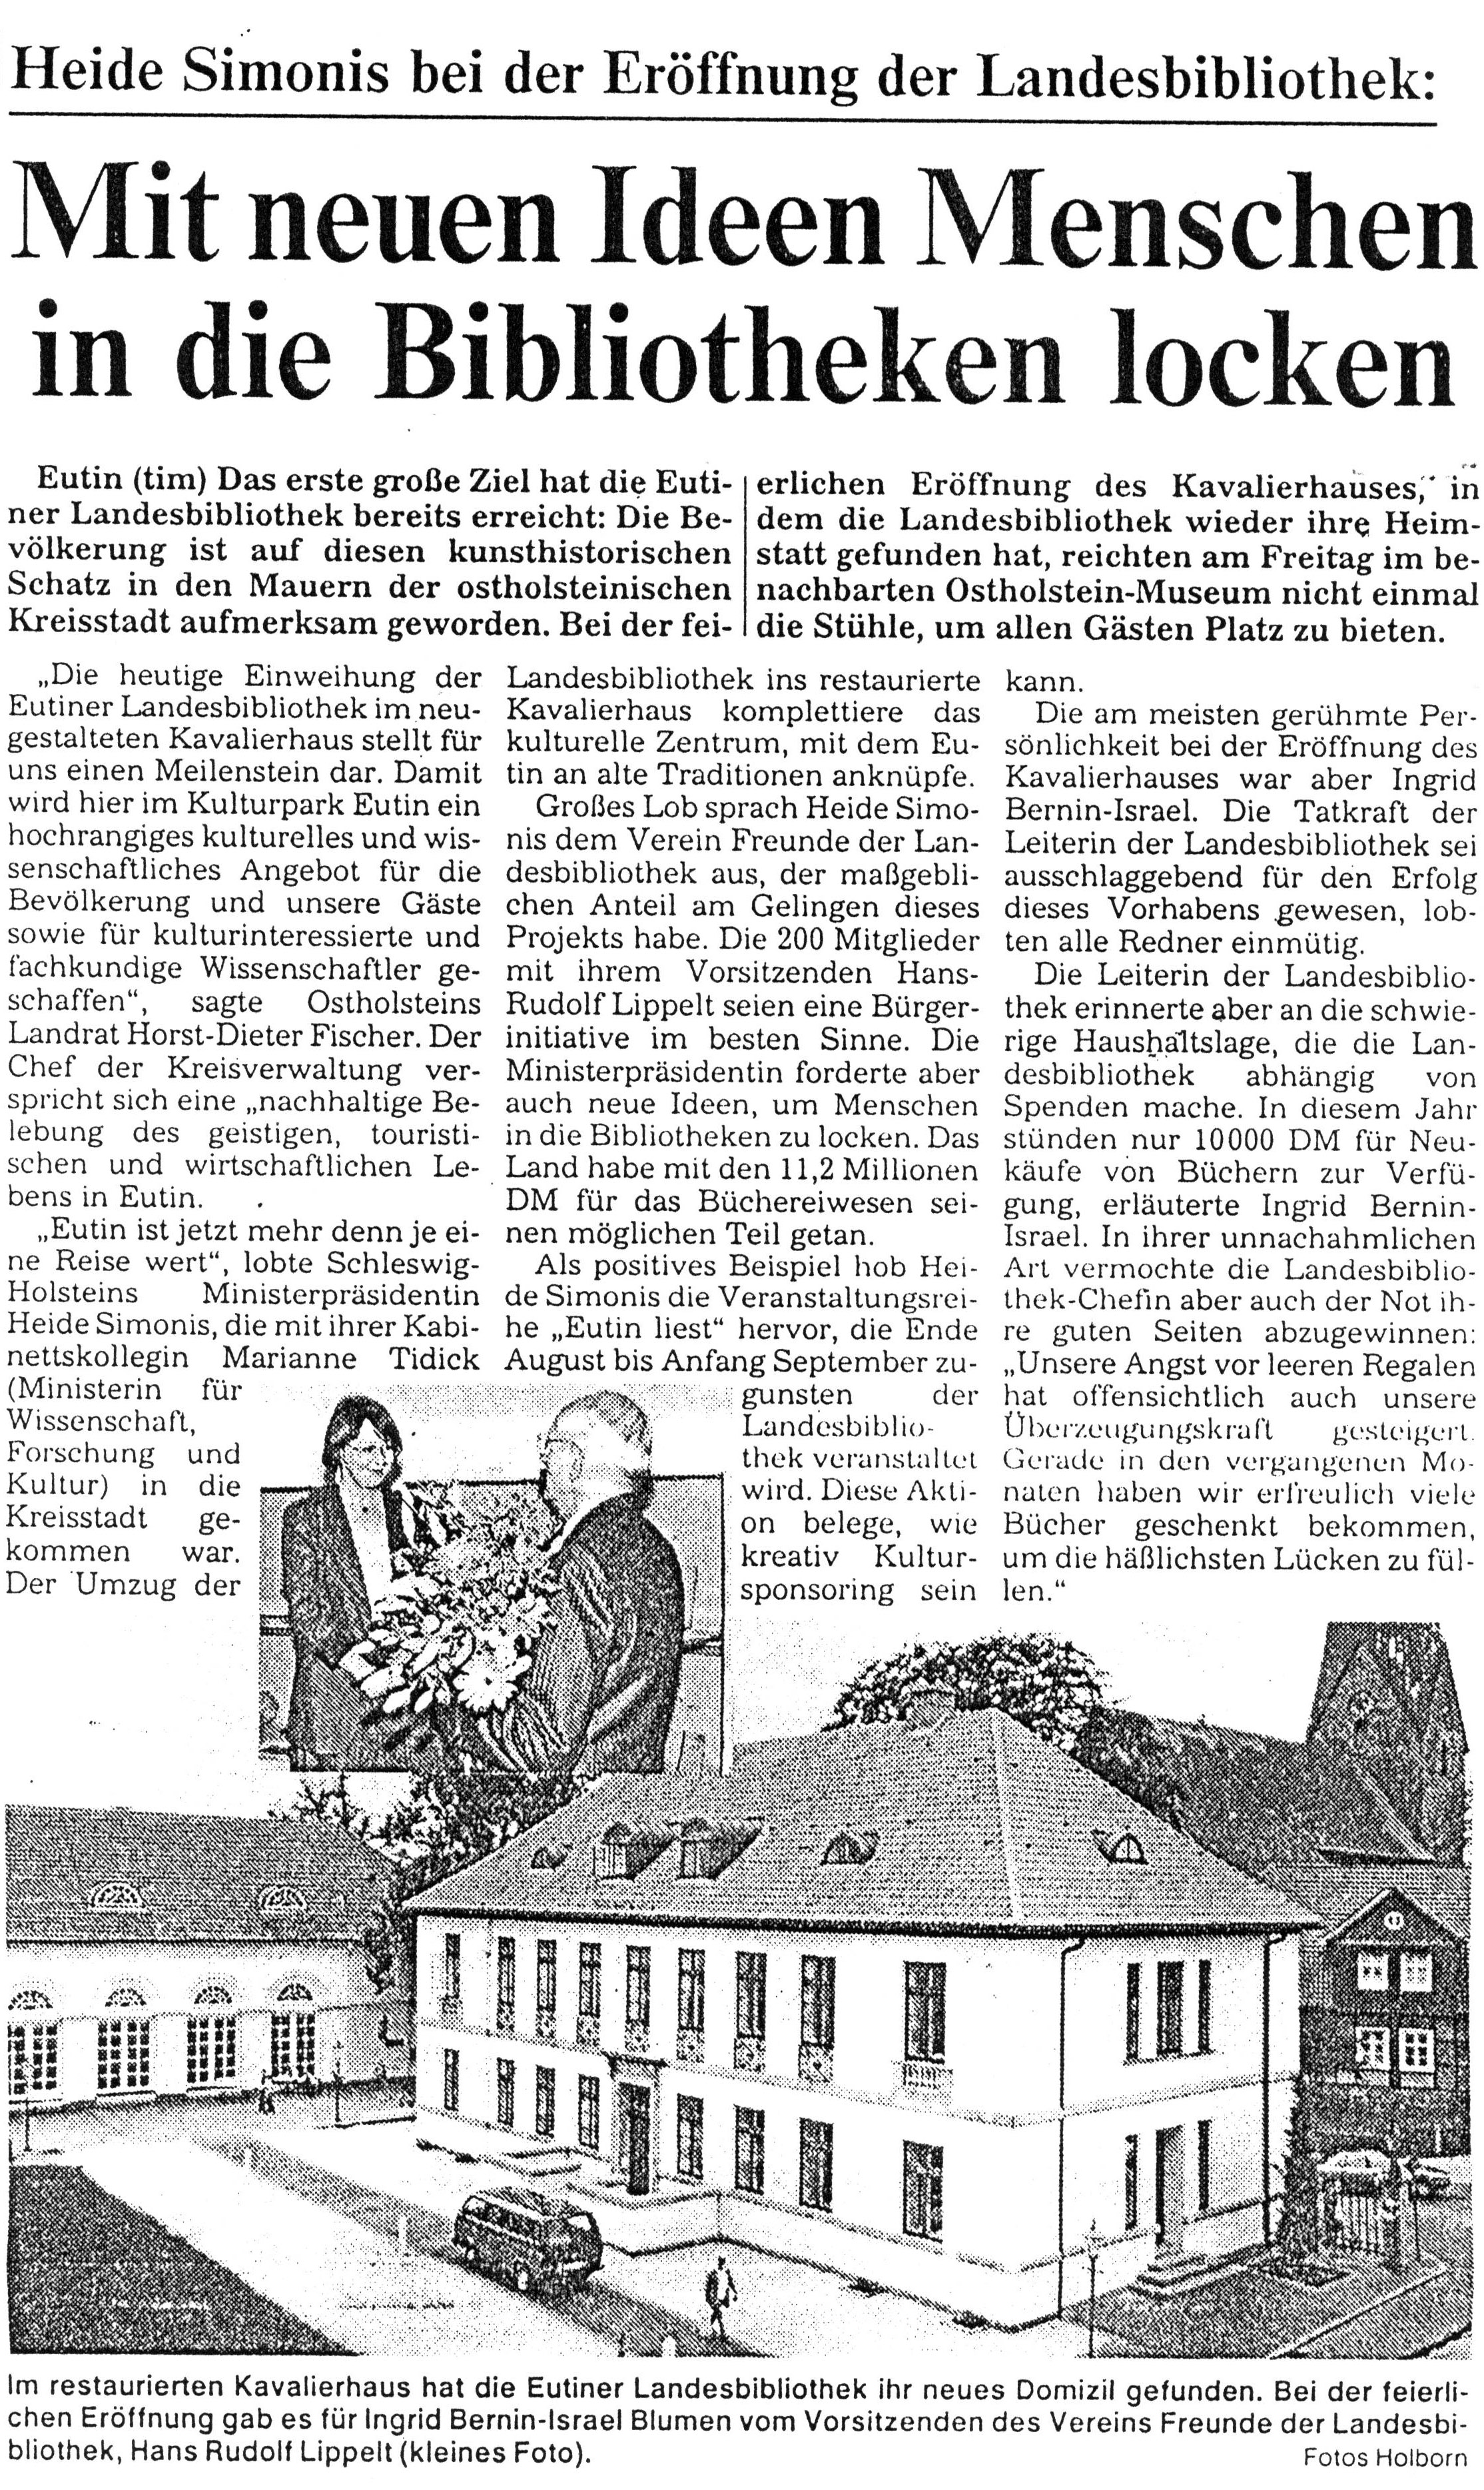 Bericht in den Kieler Nachrichten vom 31. Mai 1994 über neue Ideen und Angebote der Eutiner Landesbibliothek